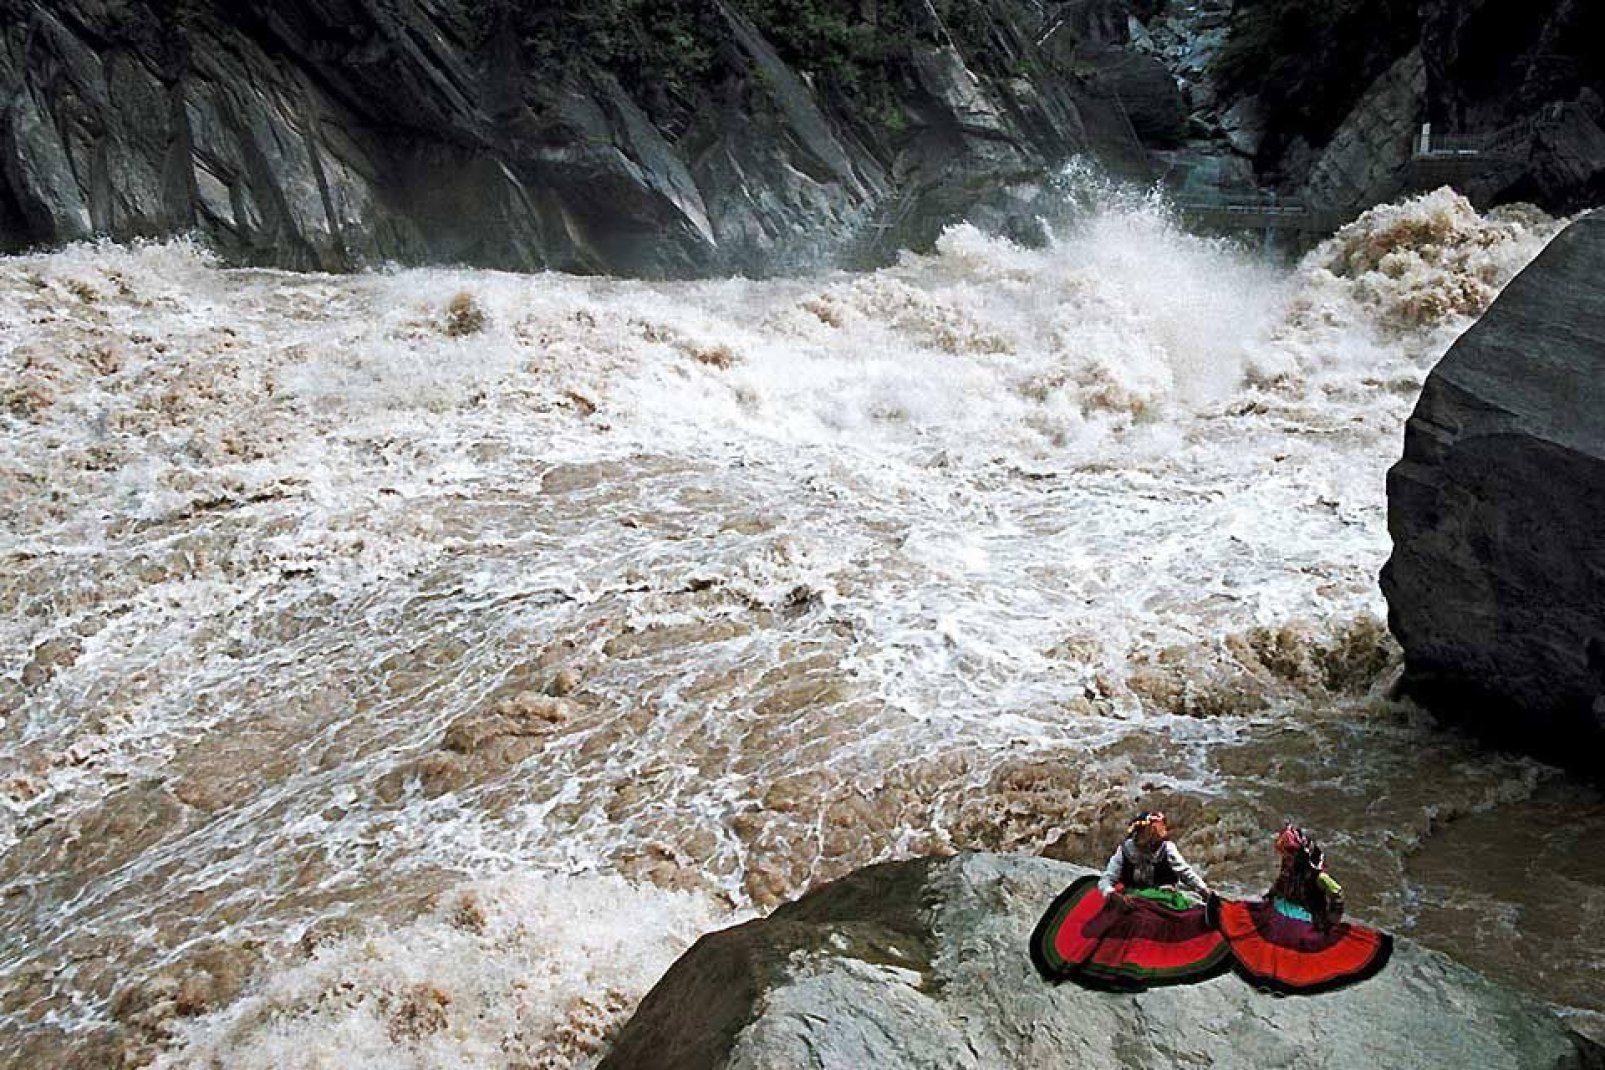 Le gole del Salto della Tigre sono un canyon sul fiume Yangzi. Vi si possono ammirare impressionanti scogliere.